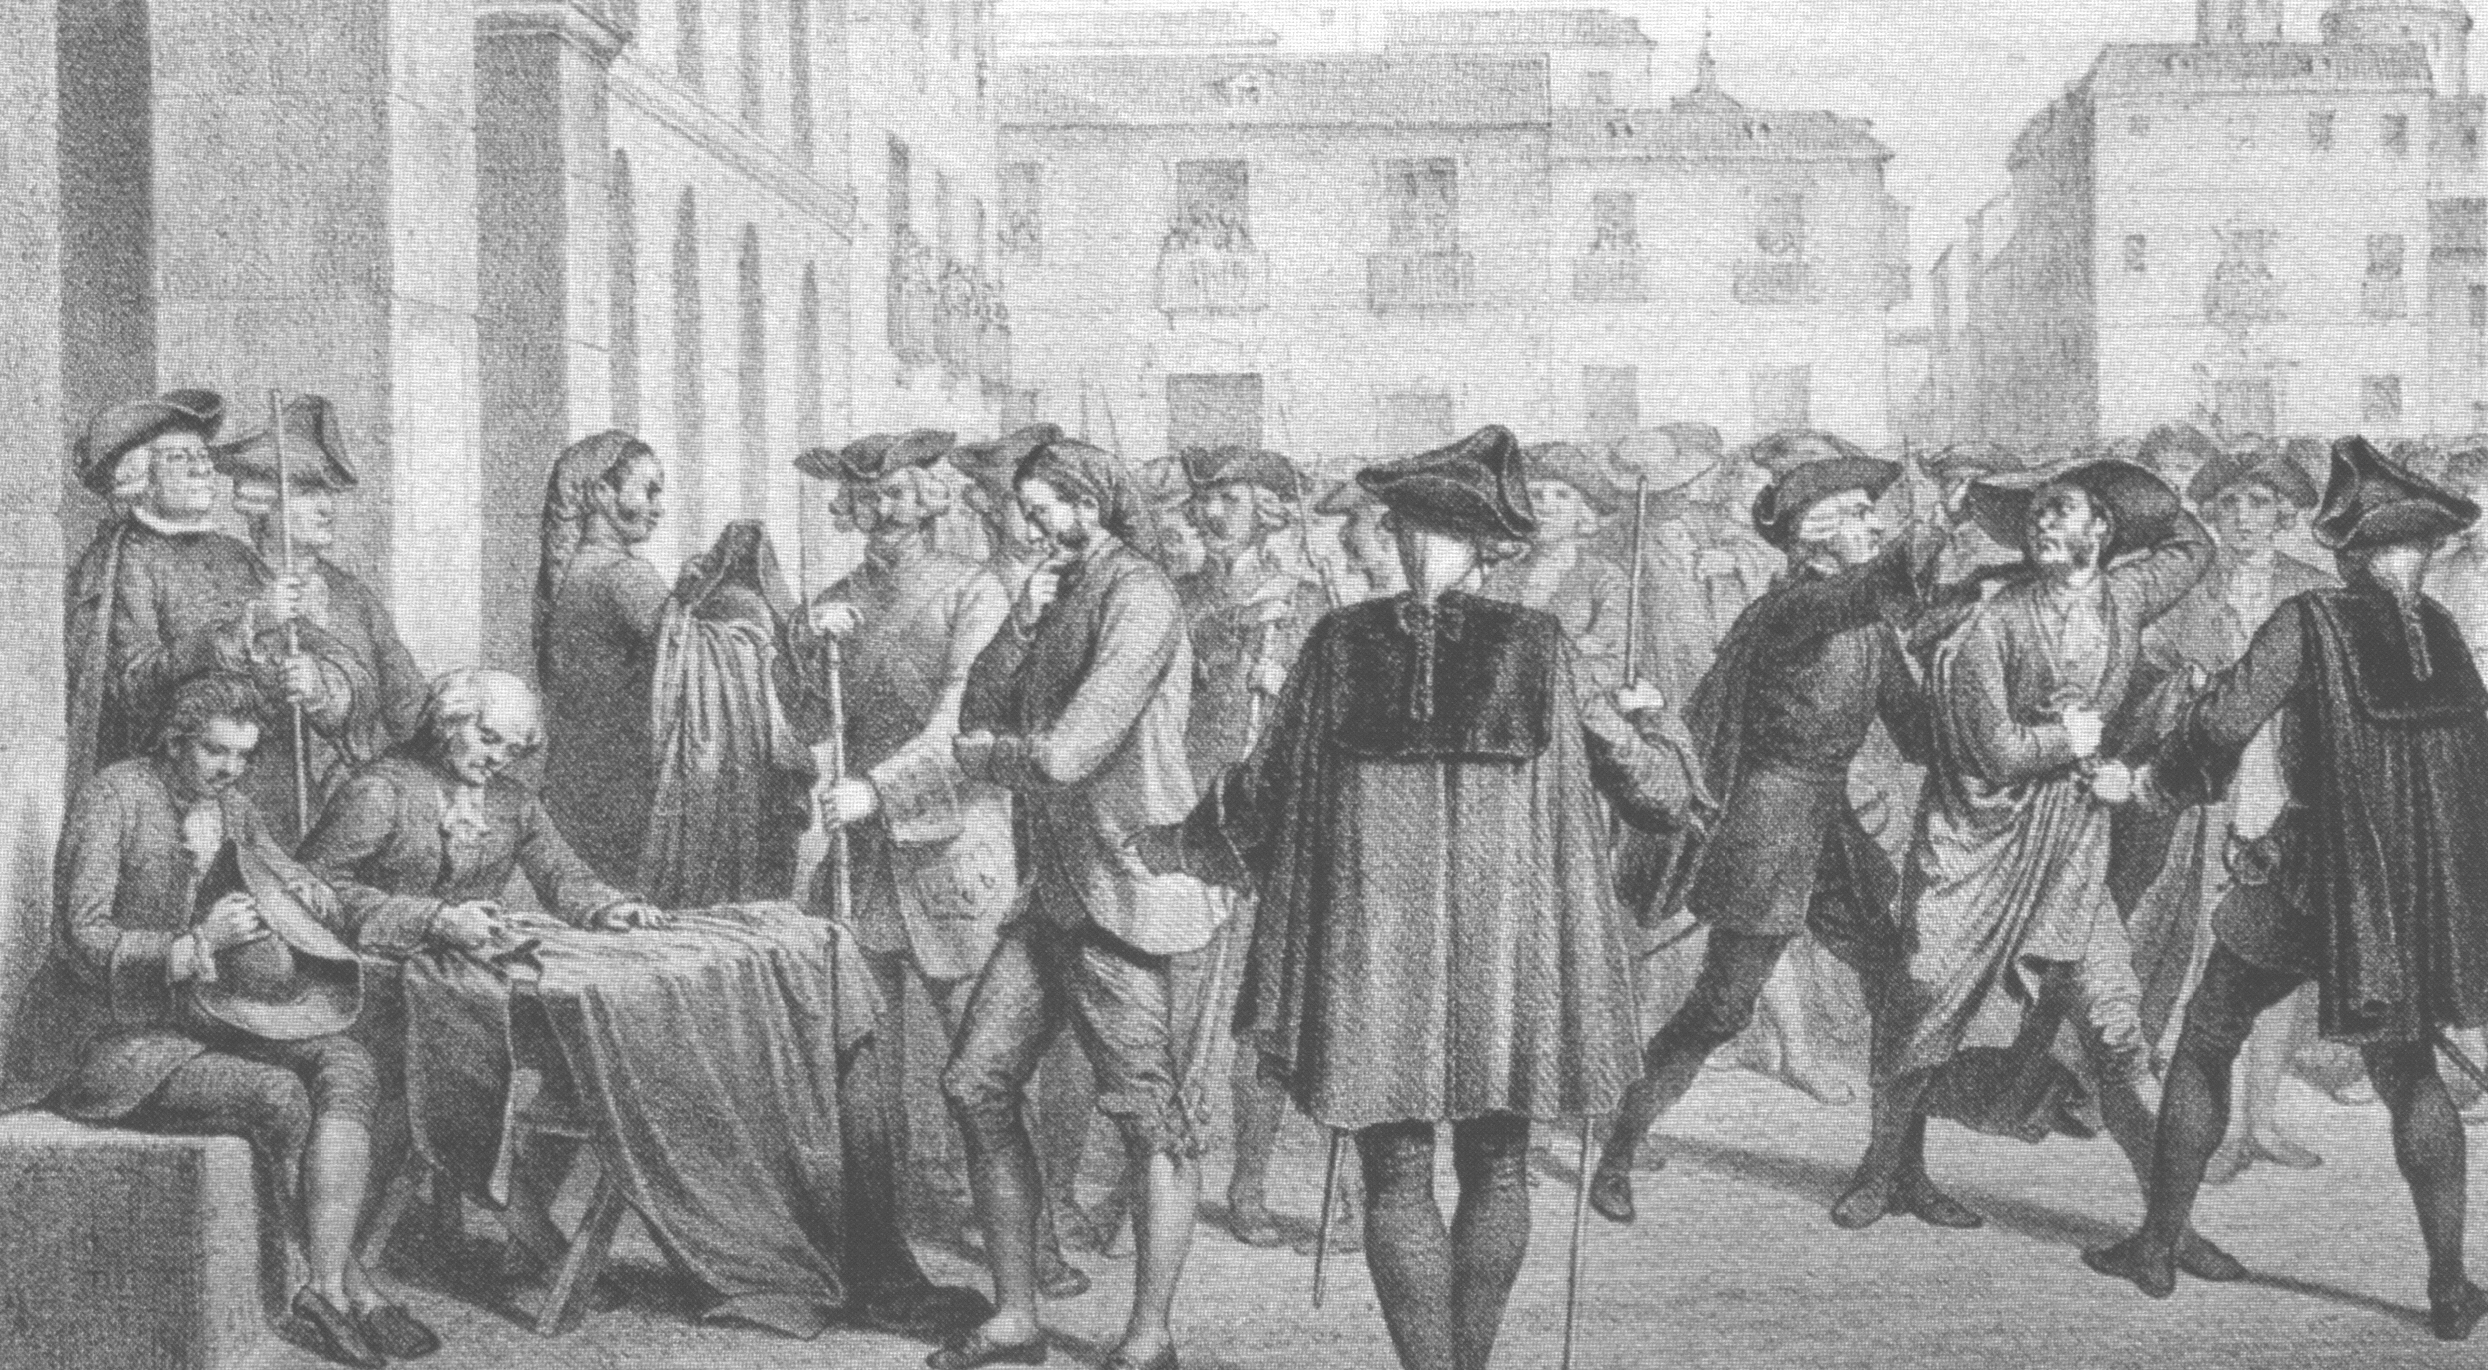 Los primeros Borbones. La práctica del Despotismo Ilustrado: Carlos III